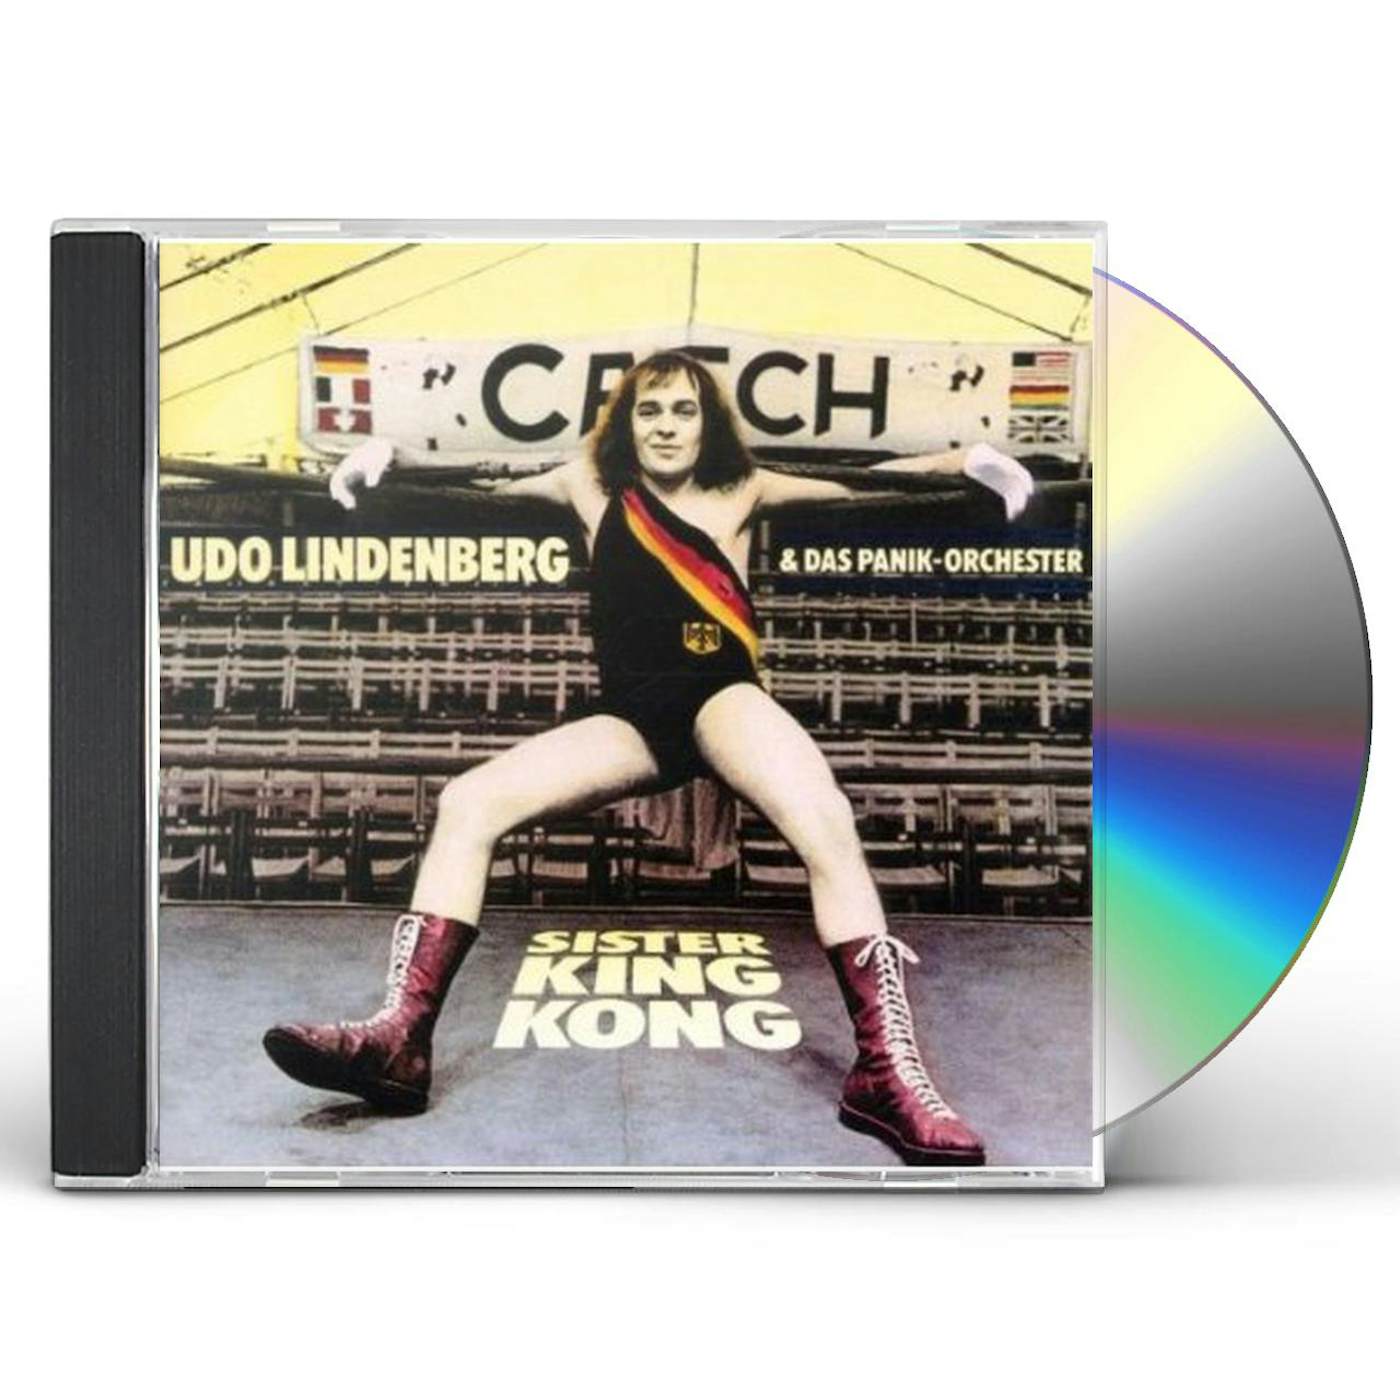 Udo Lindenberg SISTER KING KONG CD